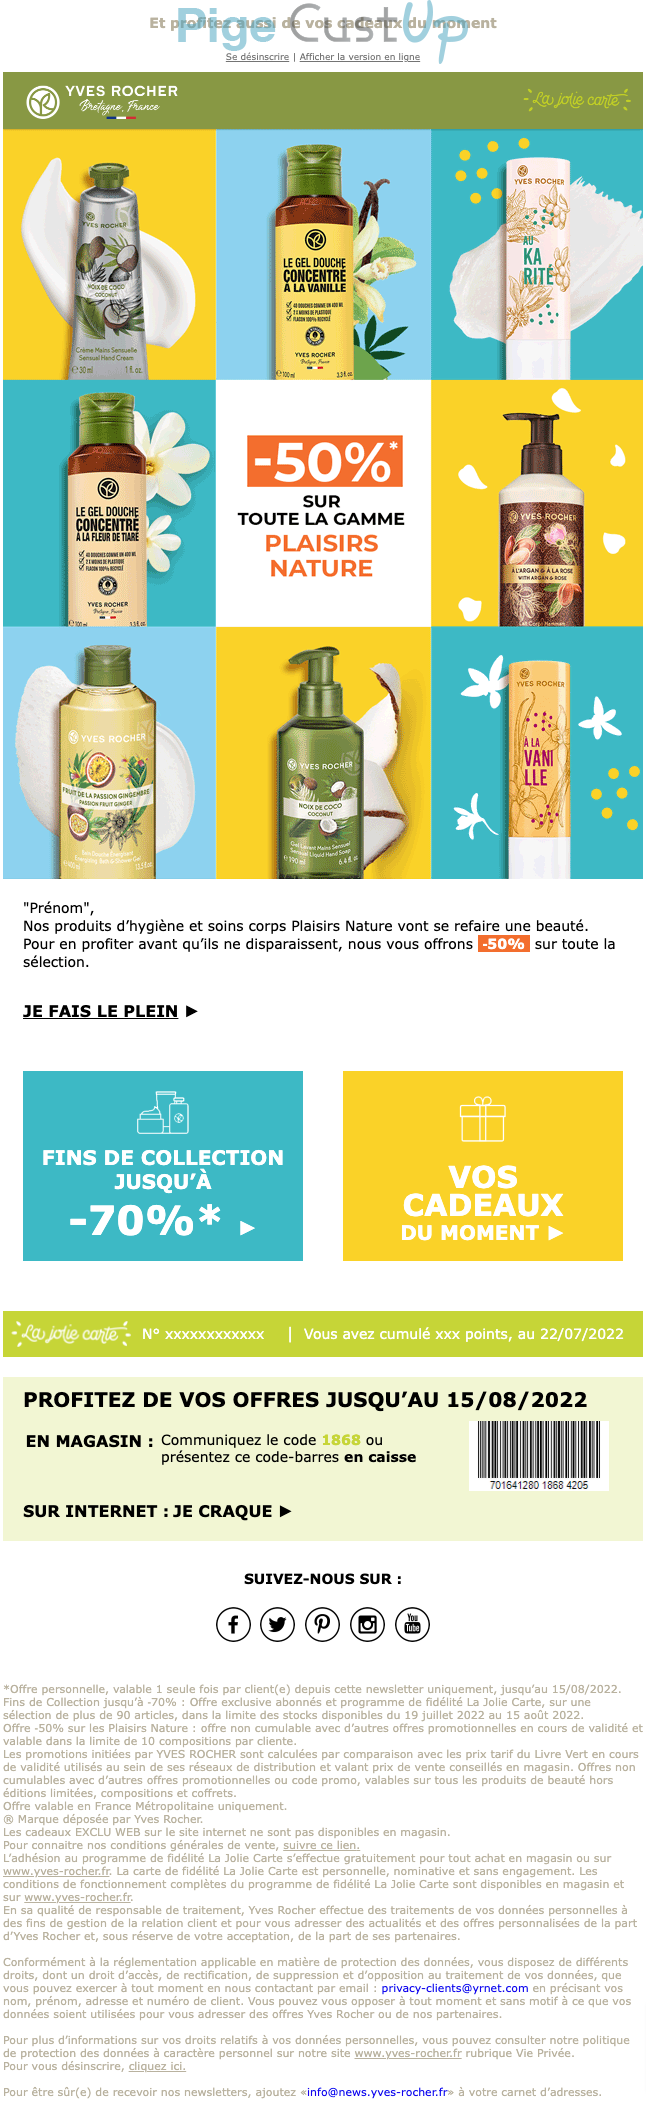 Exemple de Type de media   - Yves Rocher - Marketing Acquisition - Ventes flash, soldes, demarque, promo, réduction